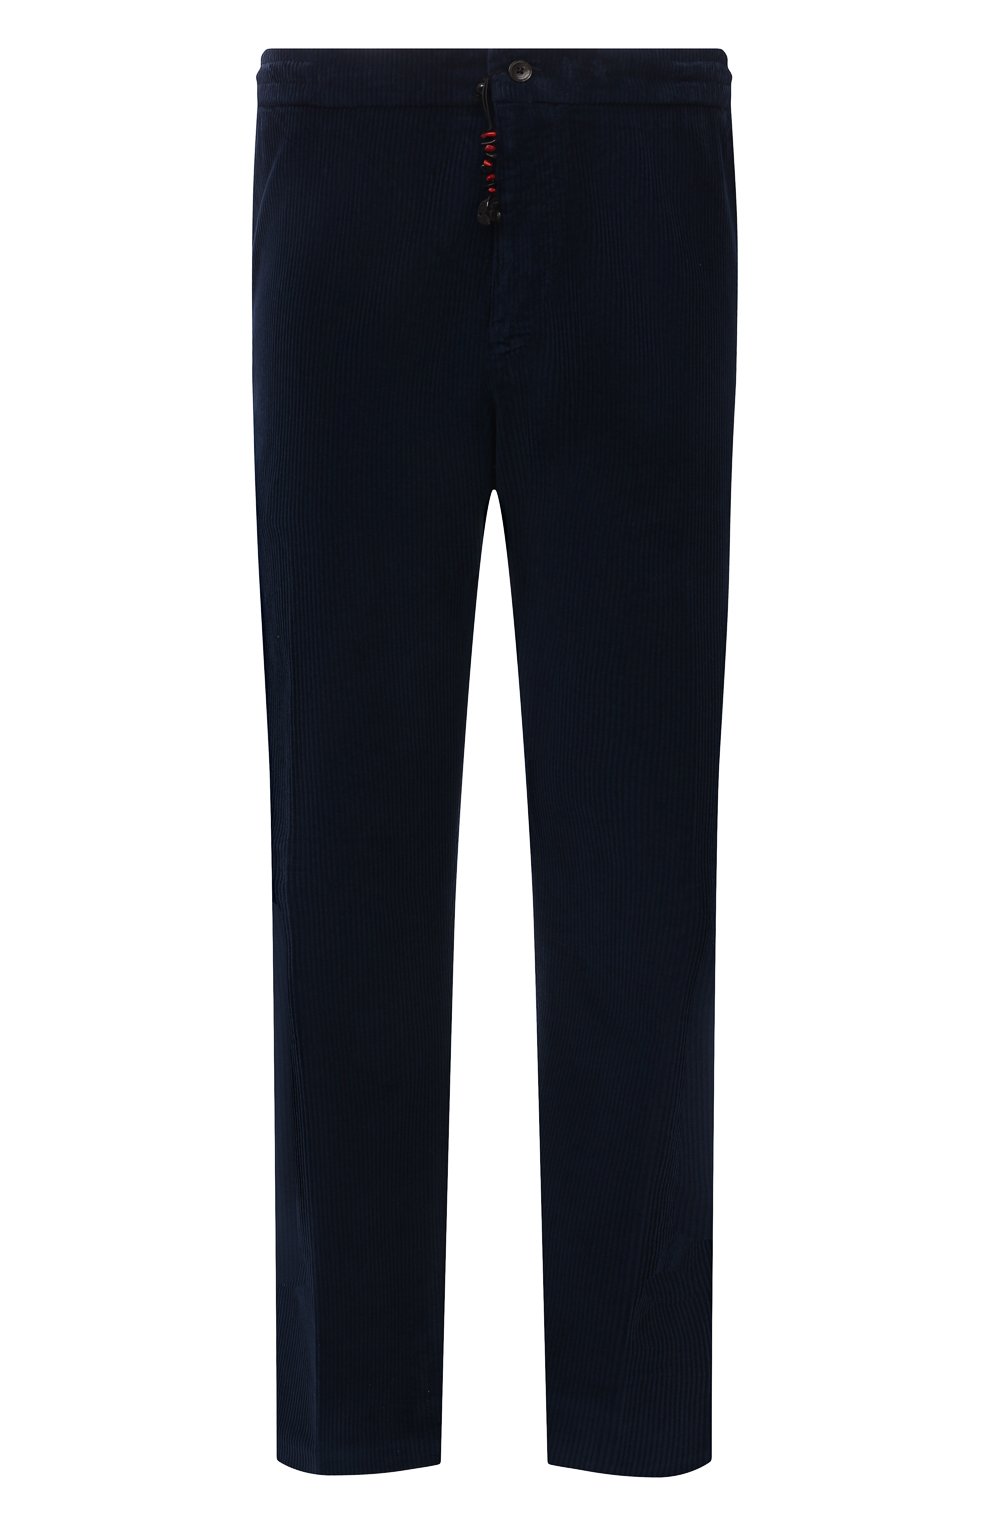 Мужские хлопковые брюки MARCO PESCAROLO синего цвета, арт. CHIAIAM/ZIP+SFILA/4402 | Фото 1 (Big sizes: Big Sizes; Длина (брюки, джинсы): Стандартные; Случай: Повседневный; Материал внешний: Хлопок; Стили: Кэжуэл)